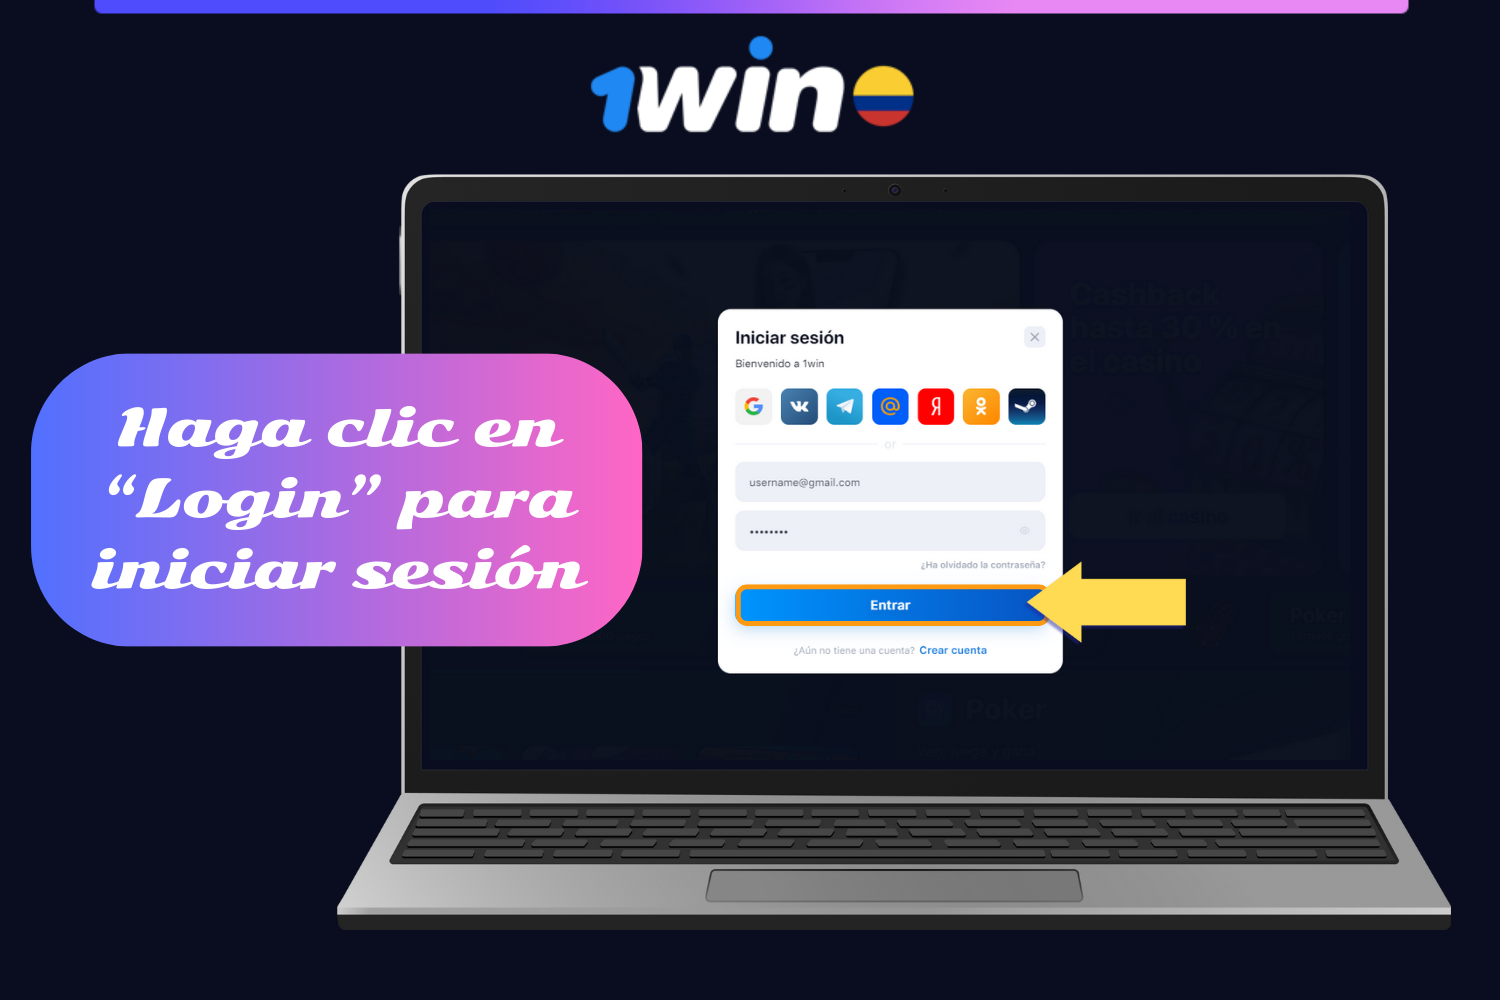 Para acceder a su cuenta 1win, los usuarios de Colombia deben hacer clic en el botón "iniciar sesión" después de introducir sus datos